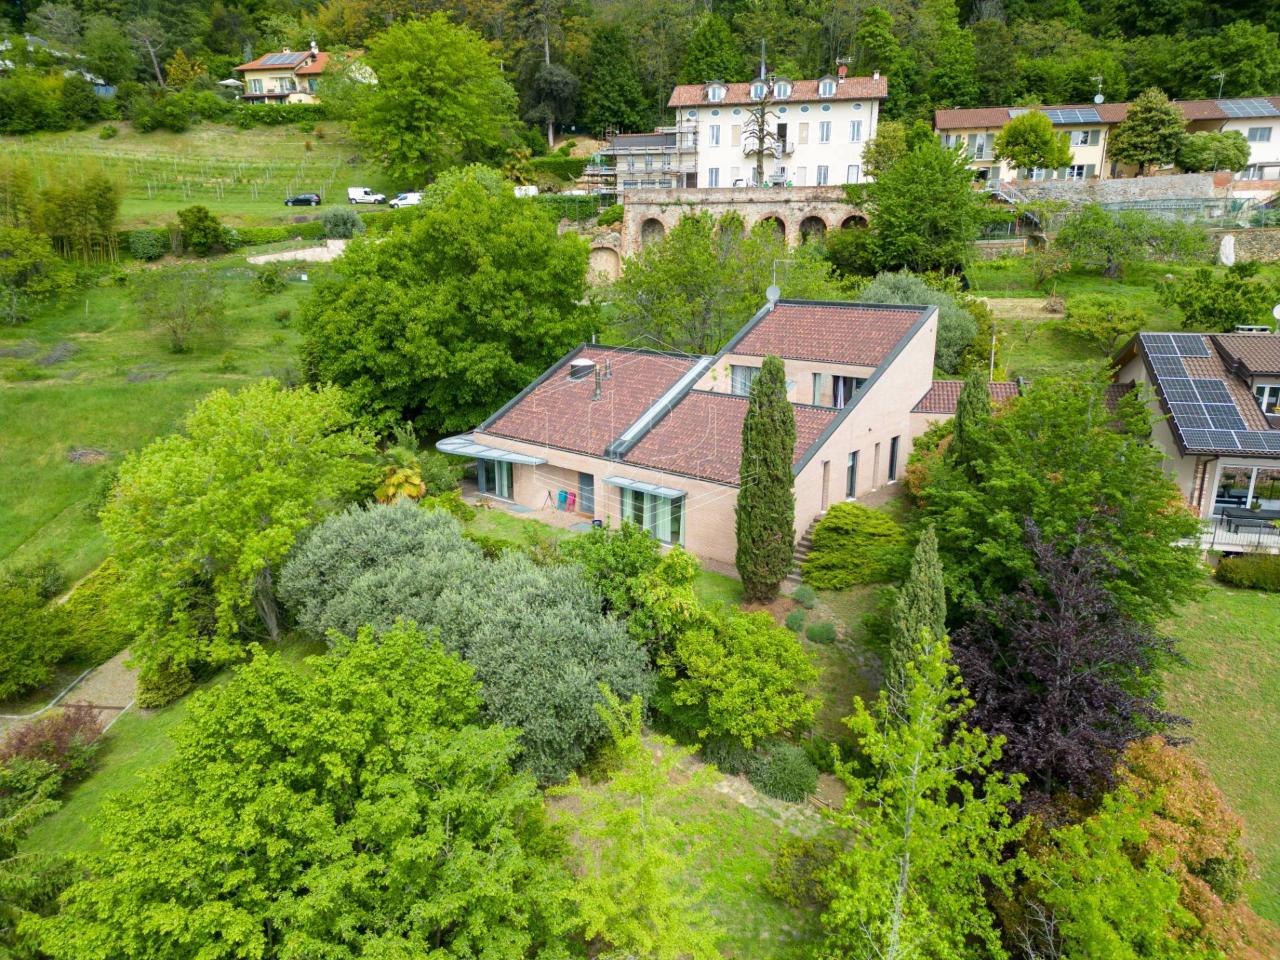 Villa in vendita a Pecetto Torinese